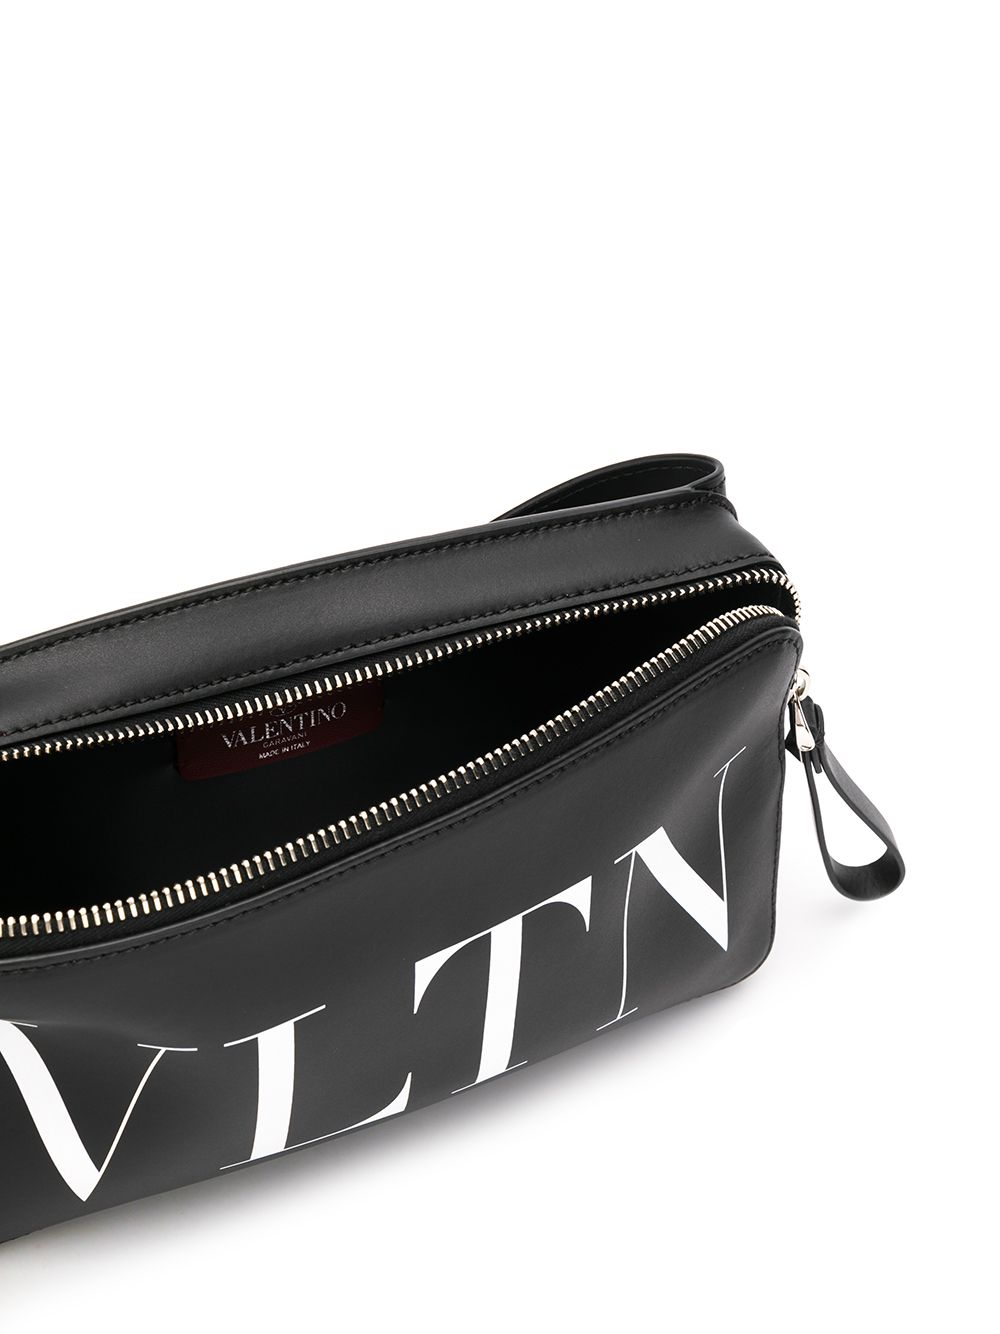 Black and white VLTN belt bag